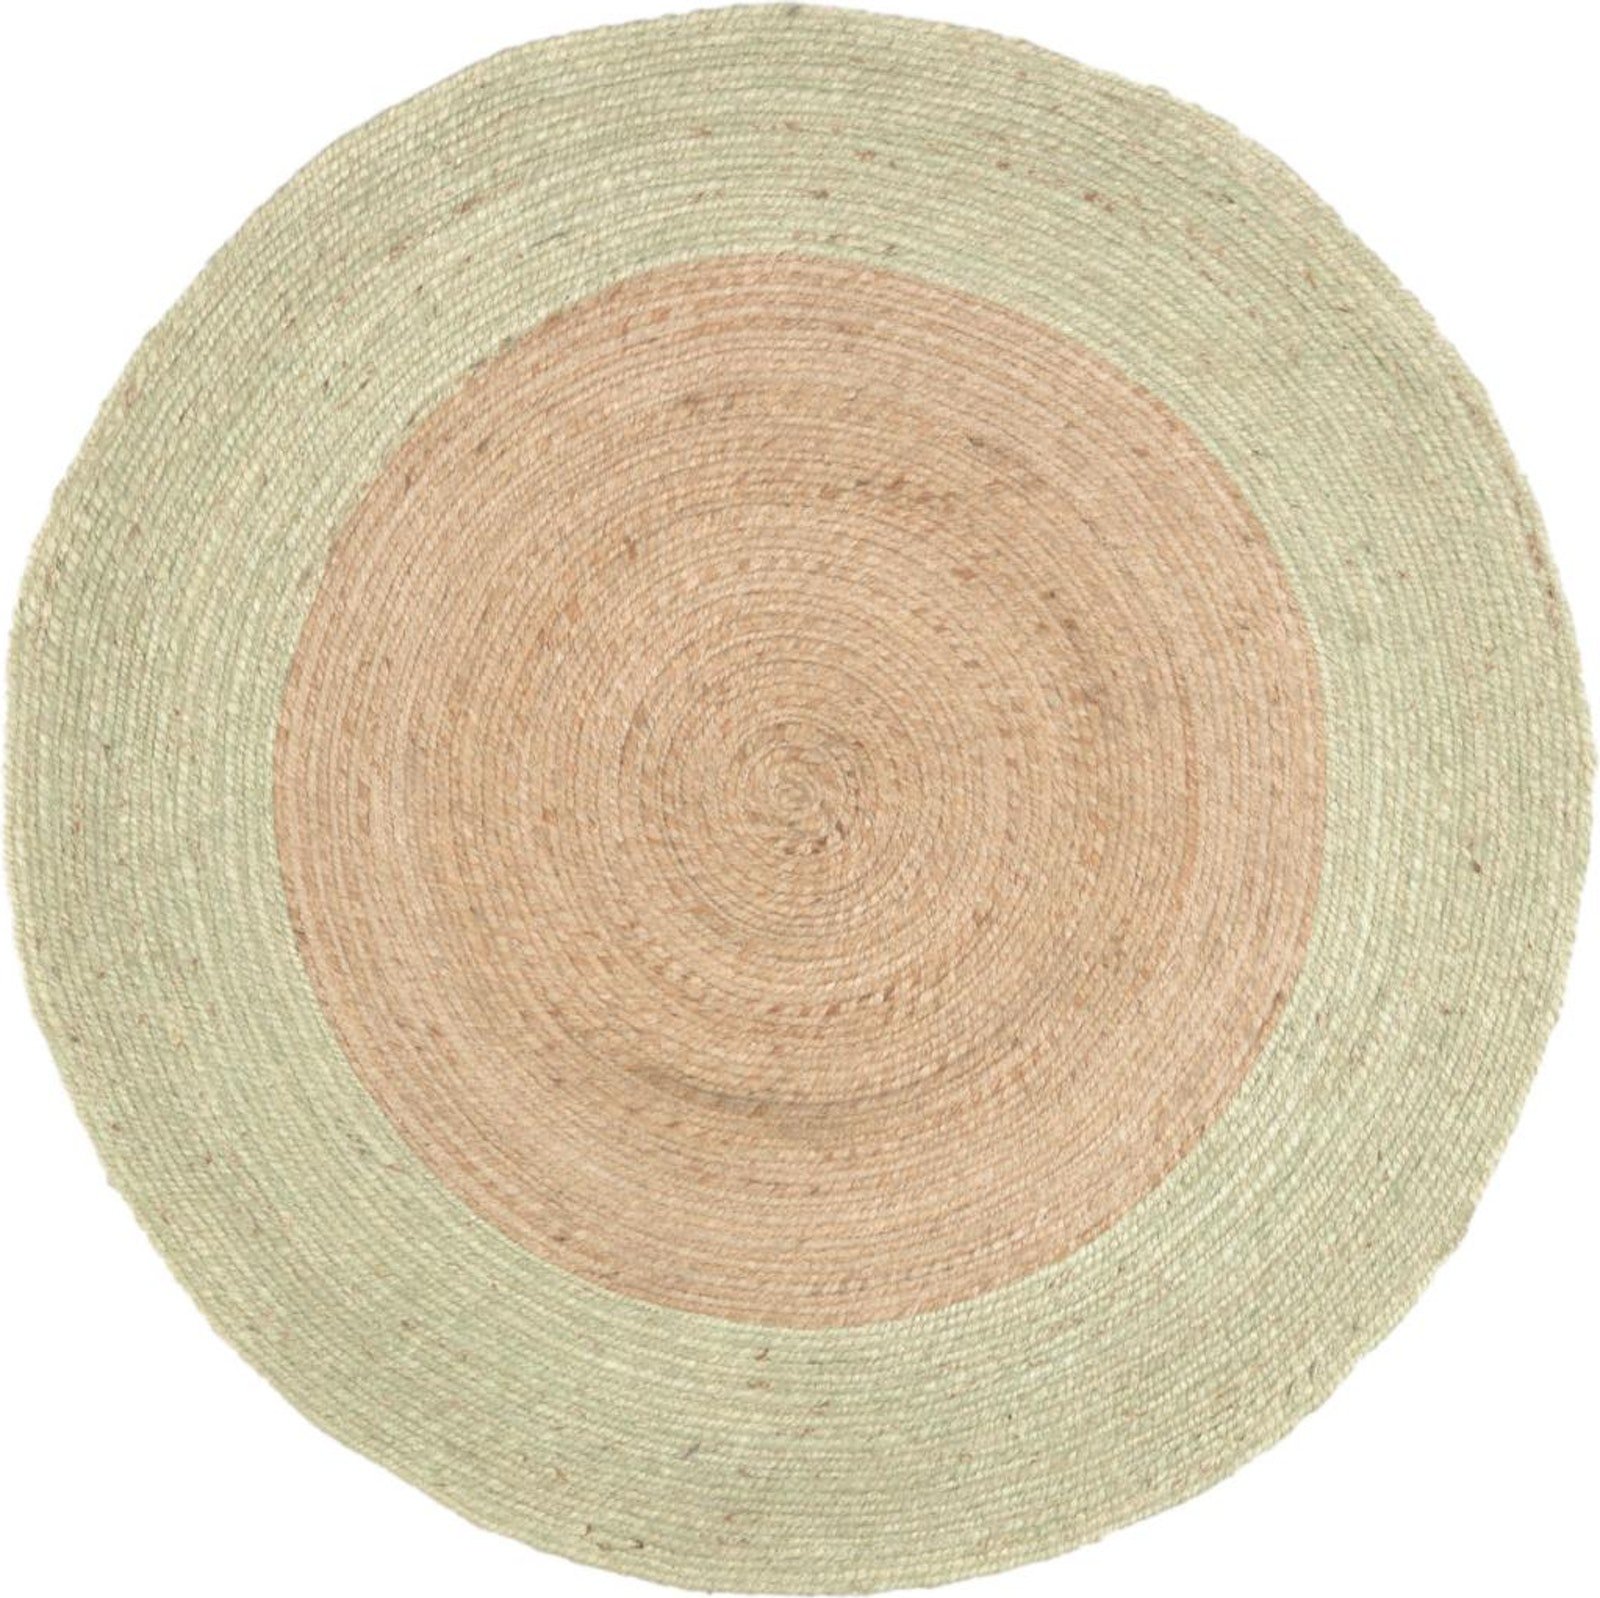 Adabel, Tæppe, naturlige fibre by LaForma (H: 1 cm. B: 120 cm. L: 120 cm., Natur/Grøn)